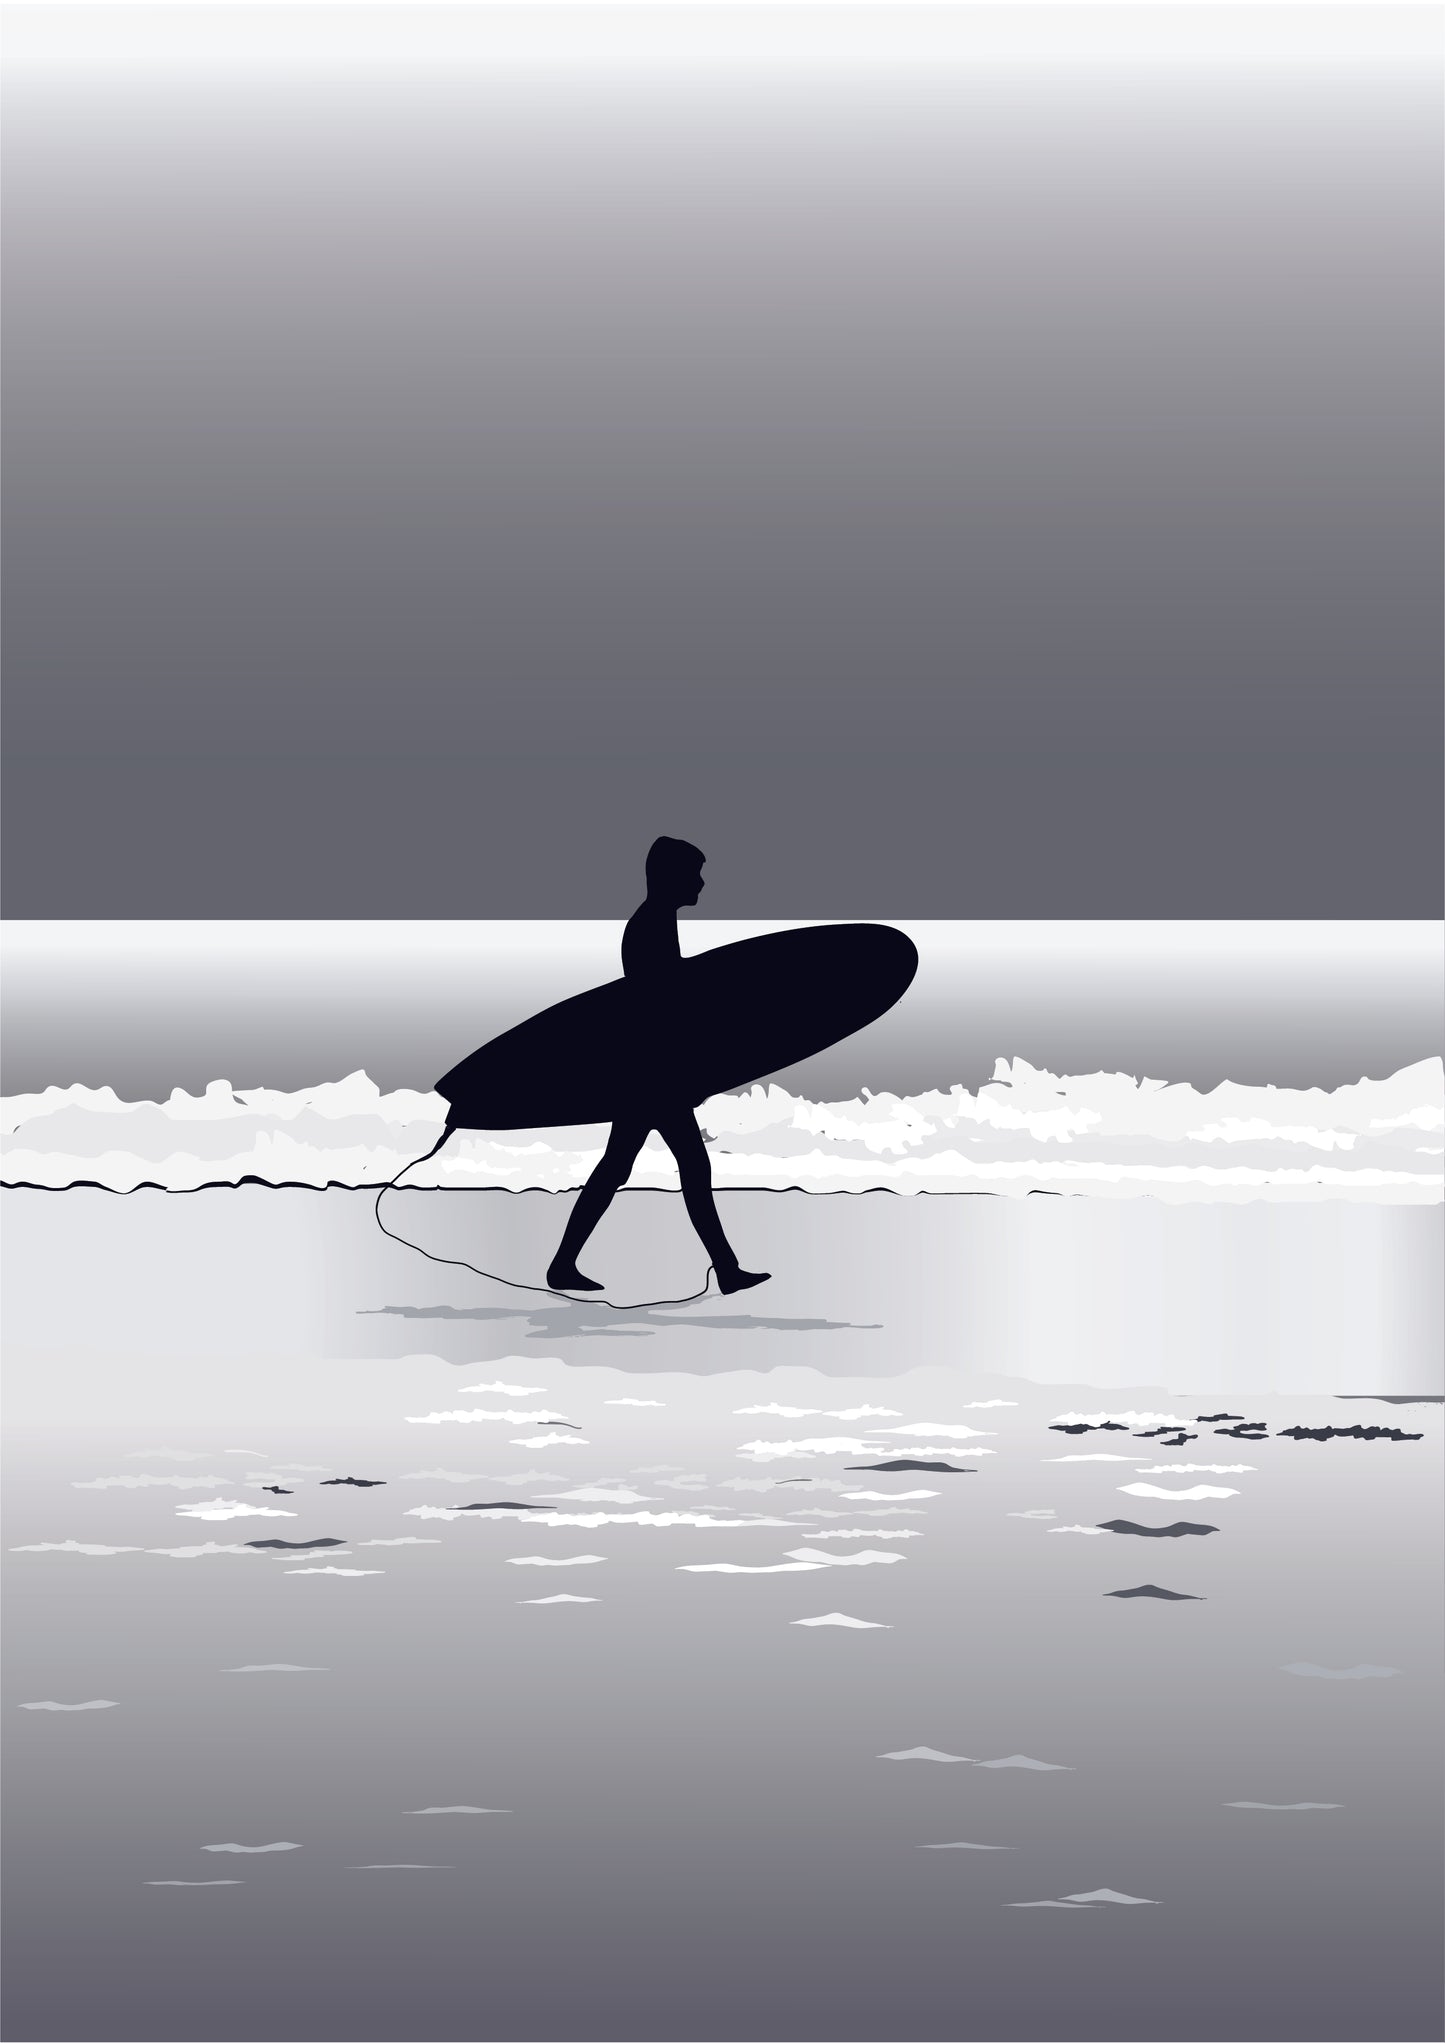 Le Surfeur